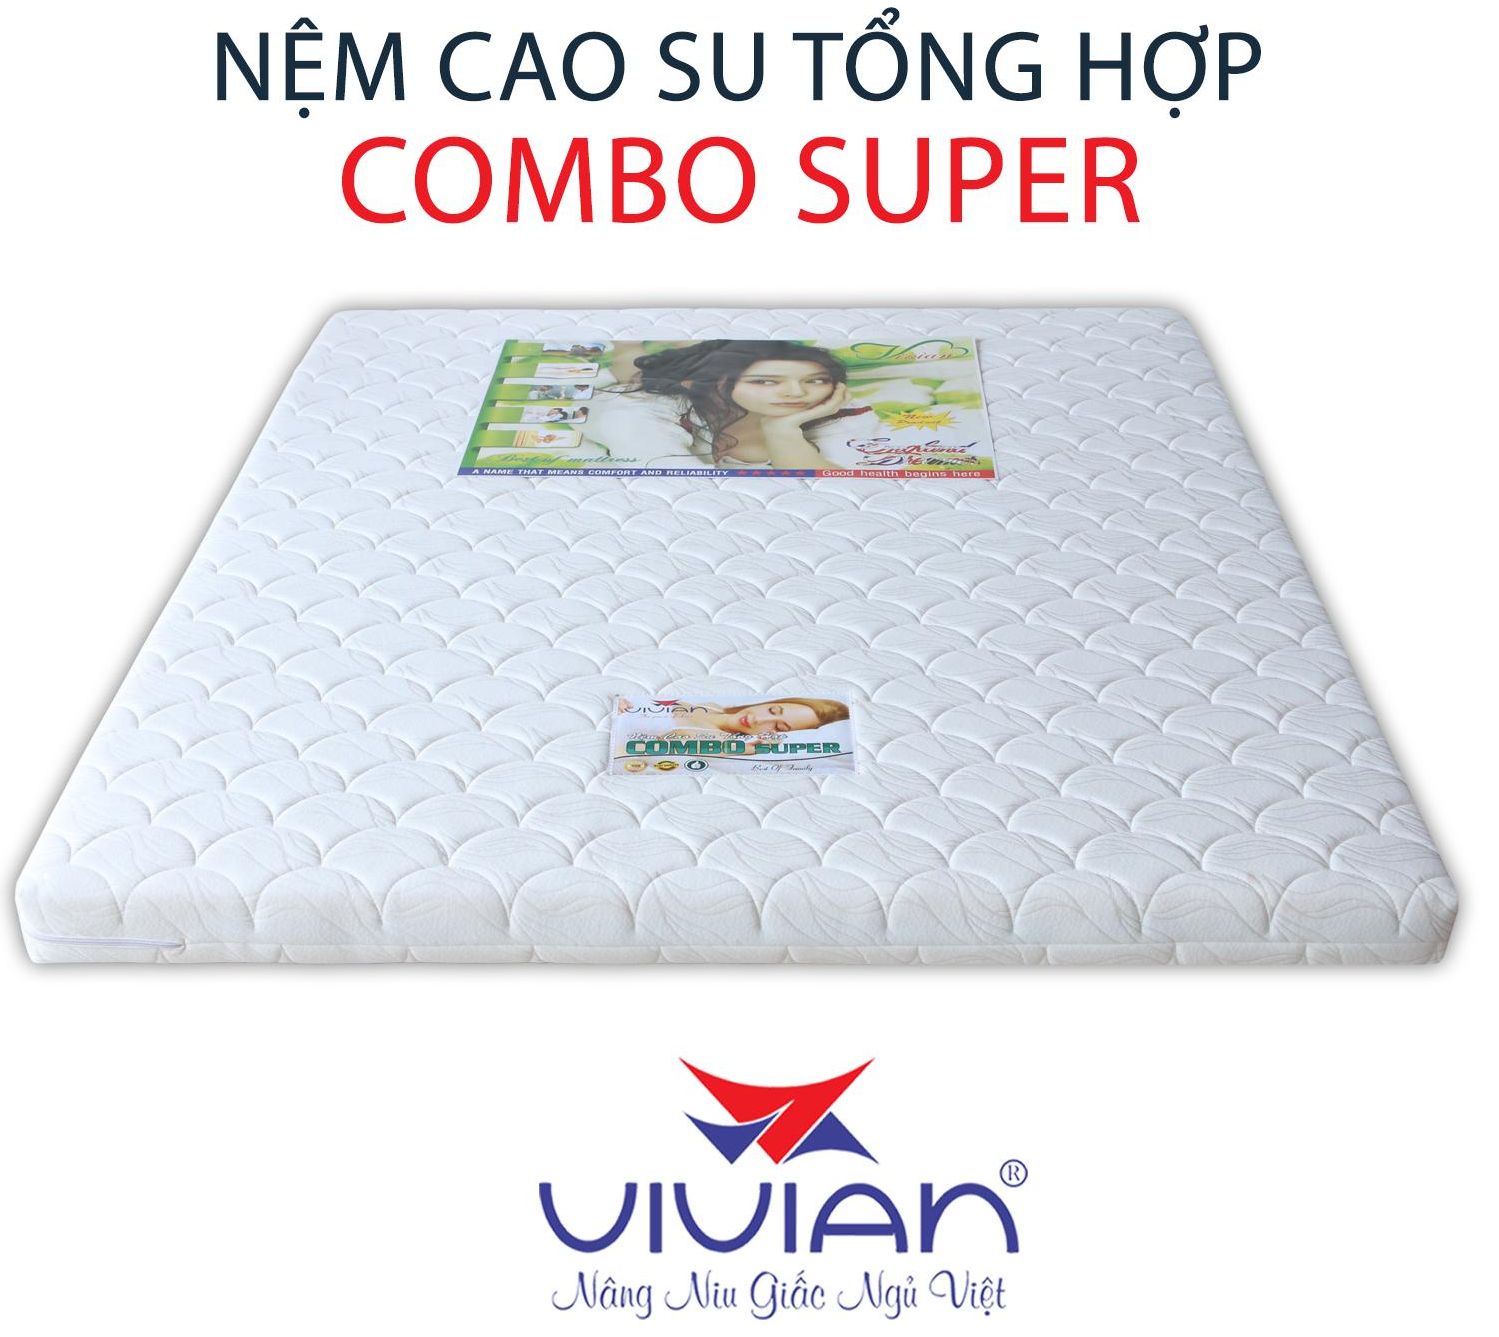 Nệm cao su tổng hợp Combo Super Vivian mang đến cho bạn giấc ngủ êm ái nhờ mặt nệm thoáng khí, áo nệm mềm mại